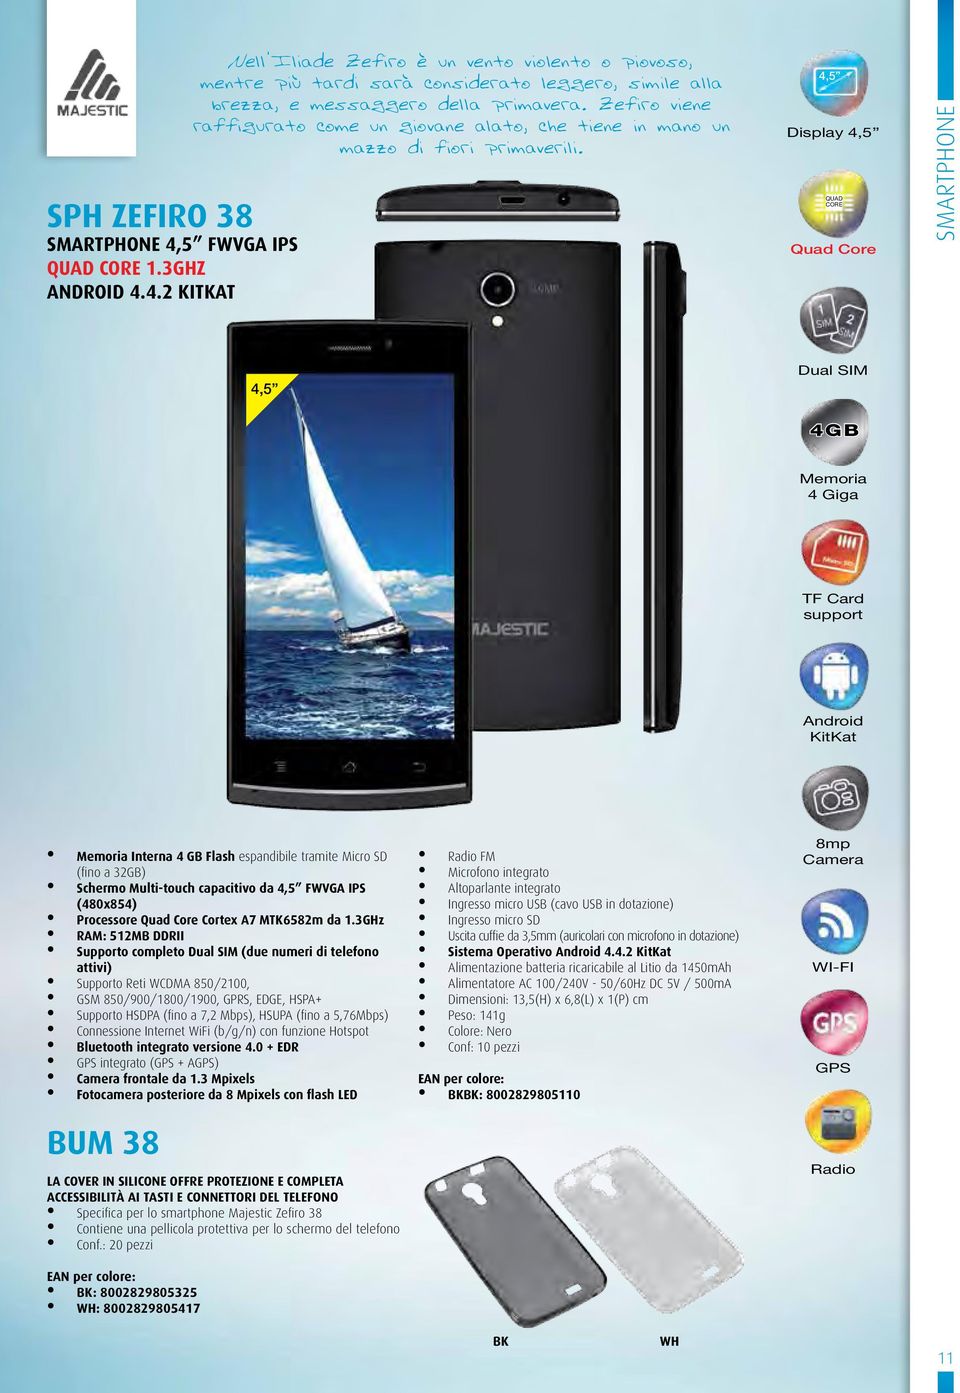 4,5 Display 4,5 QUAD Quad smartphone 4,5 SIM 4GB 4 Giga TF Card support KitKat Interna 4 GB Flash espandibile tramite Micro SD (fino a 32GB) Schermo Multi-touch capacitivo da 4,5 FWVGA IPS (480x854)